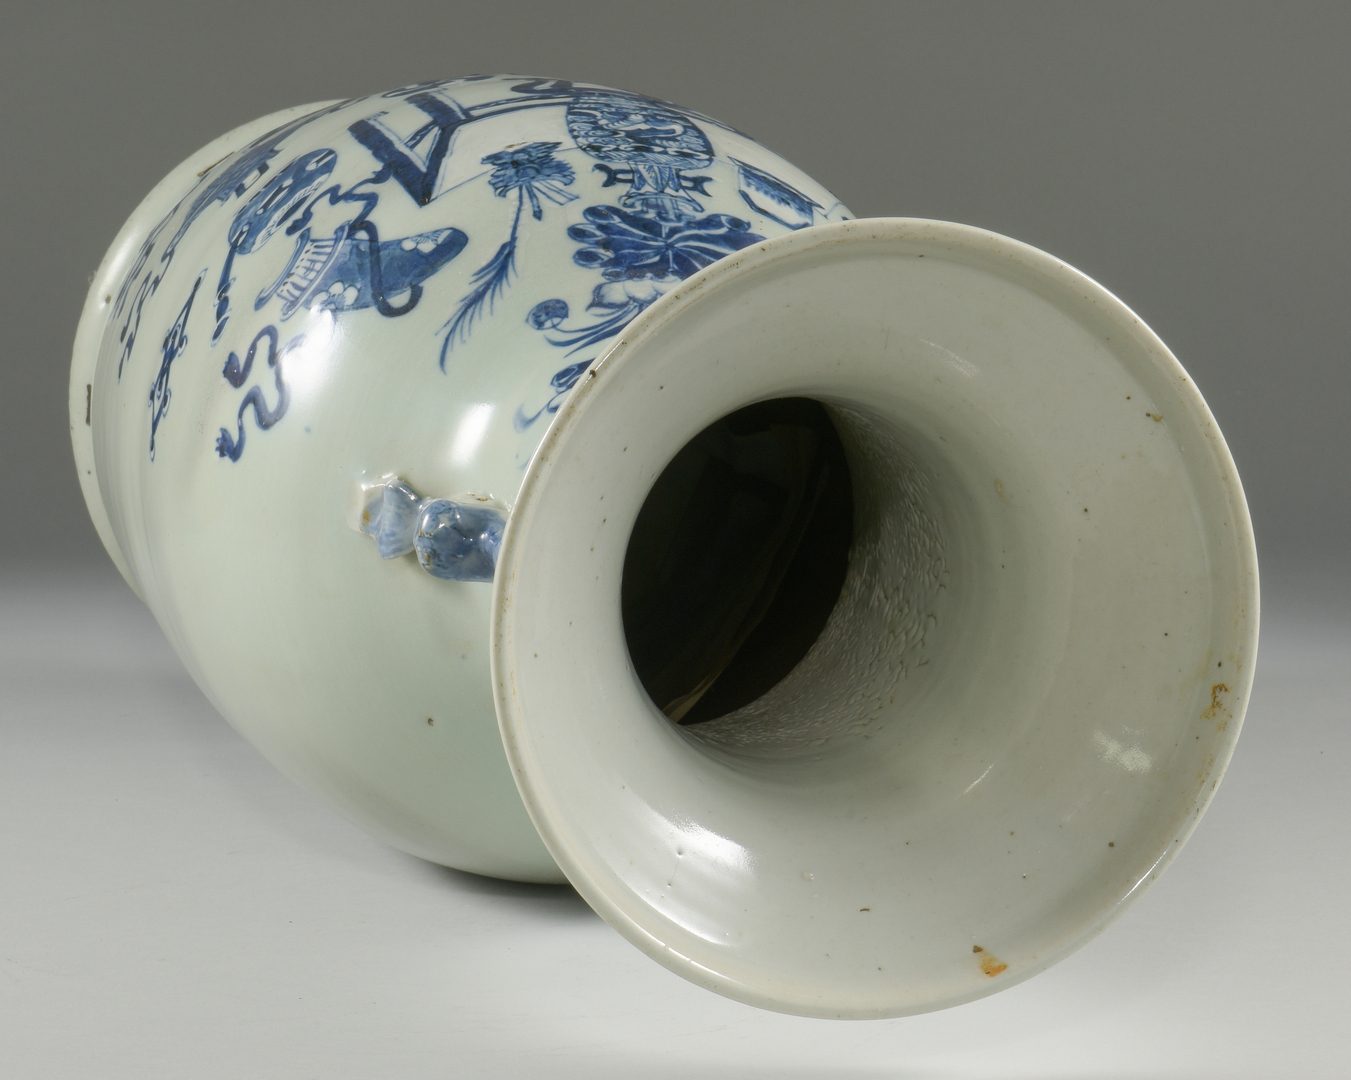 Lot 21: Chinese Blue & White Porcelain Floor Vase